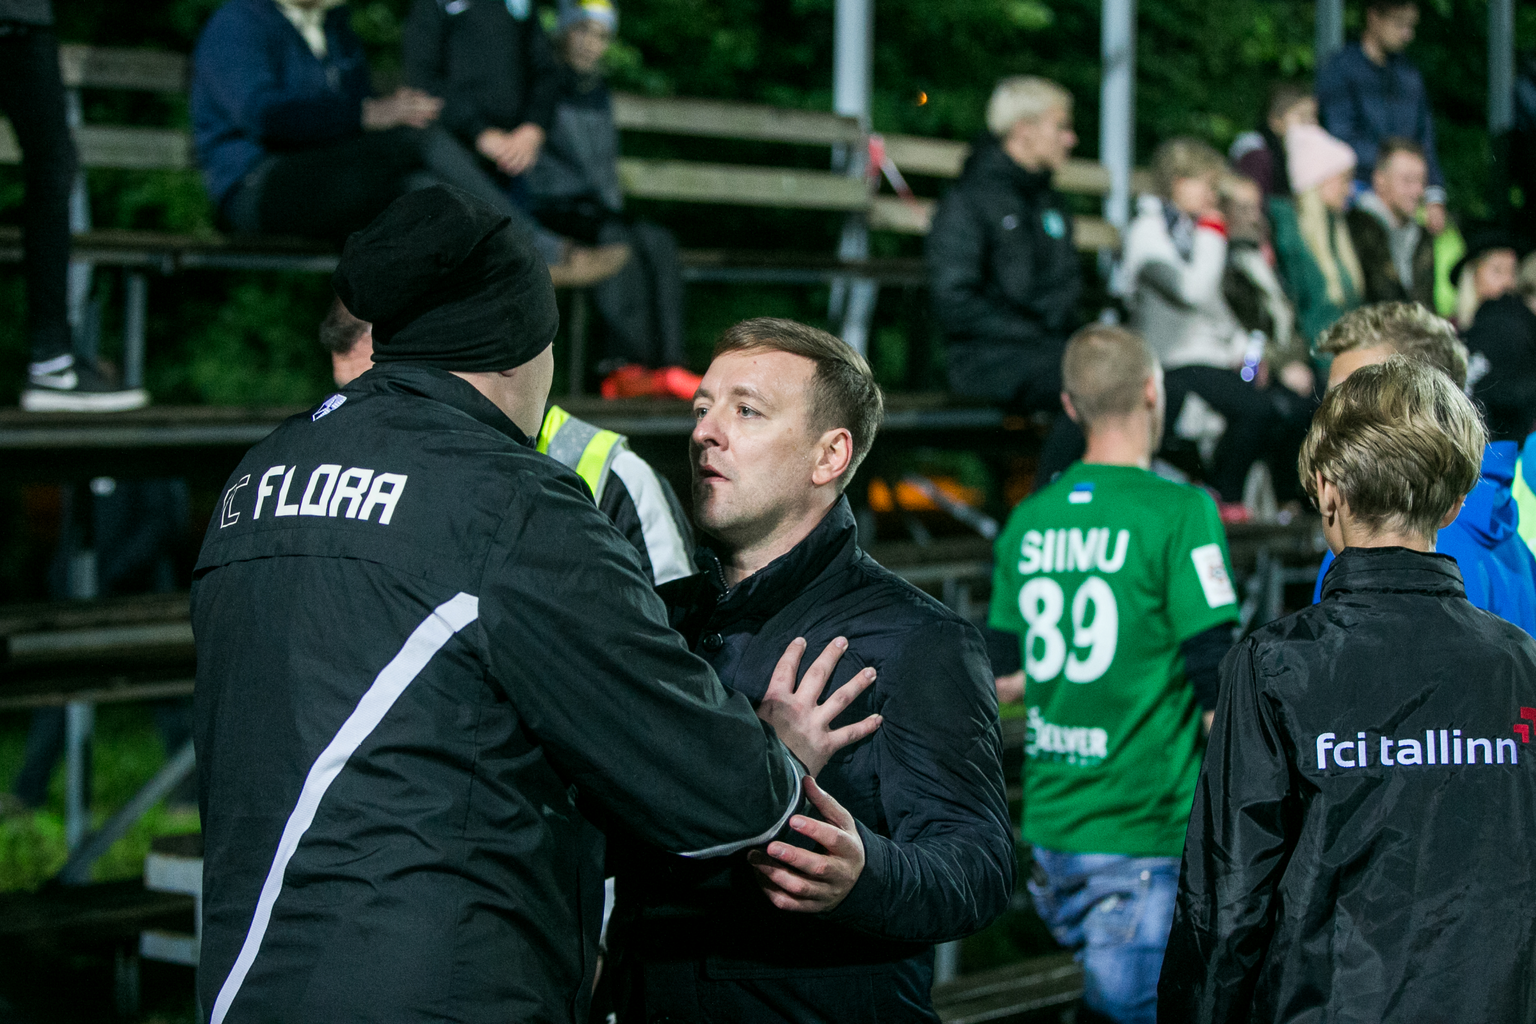 Эпизод субботней драки на стадионе в Ласнамяэ. Смотрящий на одетого в куртку FC Flora мужчину - исполнительный директор "Инфонета" Александр Алтосар.